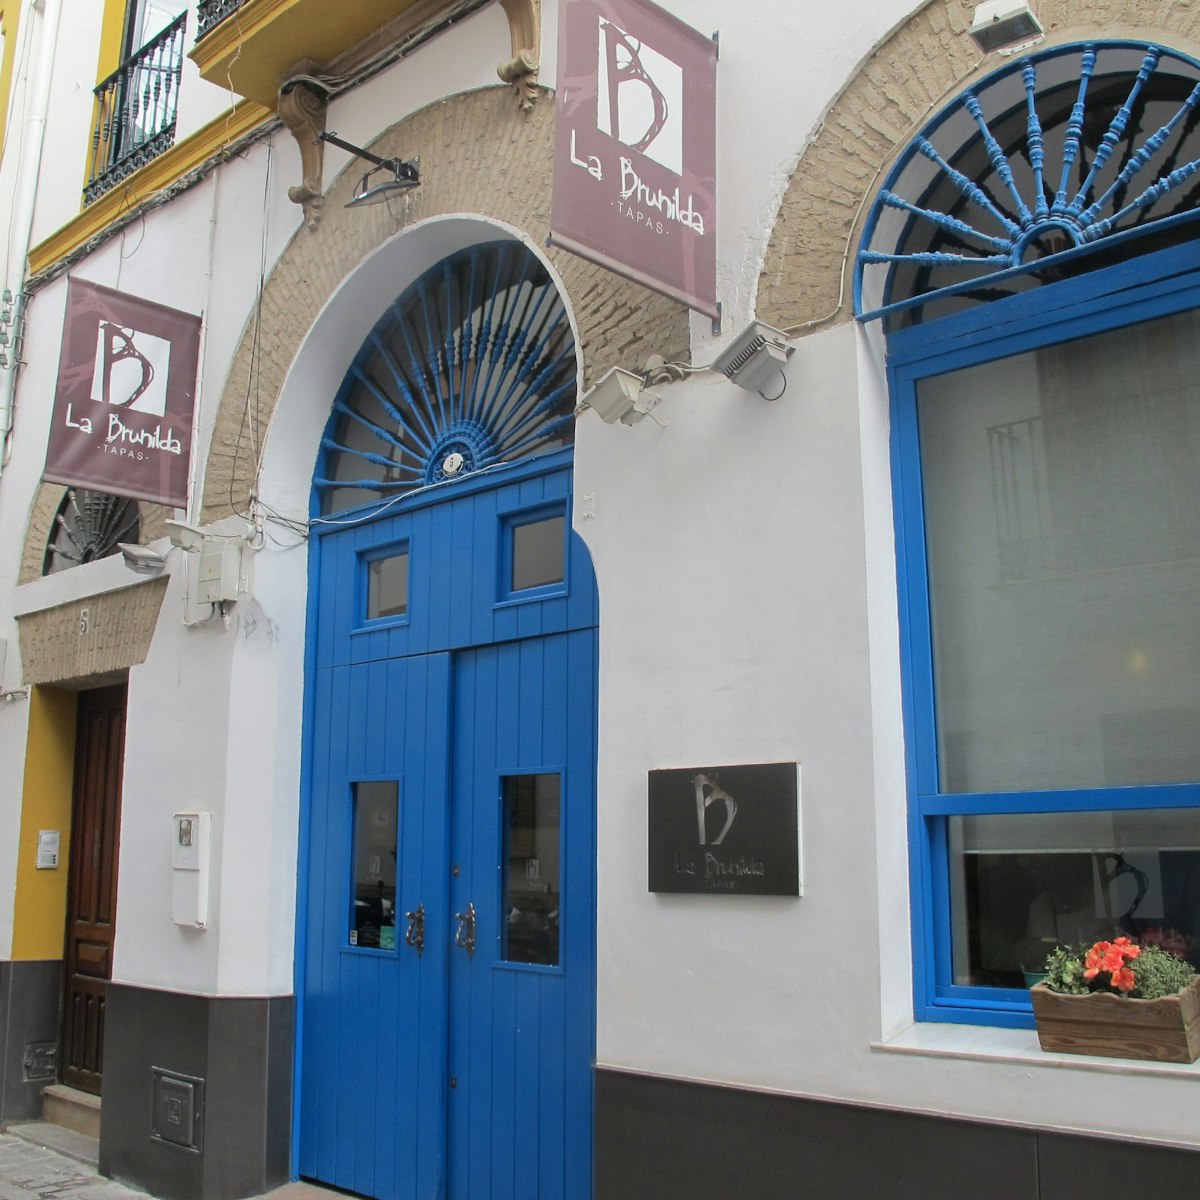 La Brunilda, blue door and window with signs